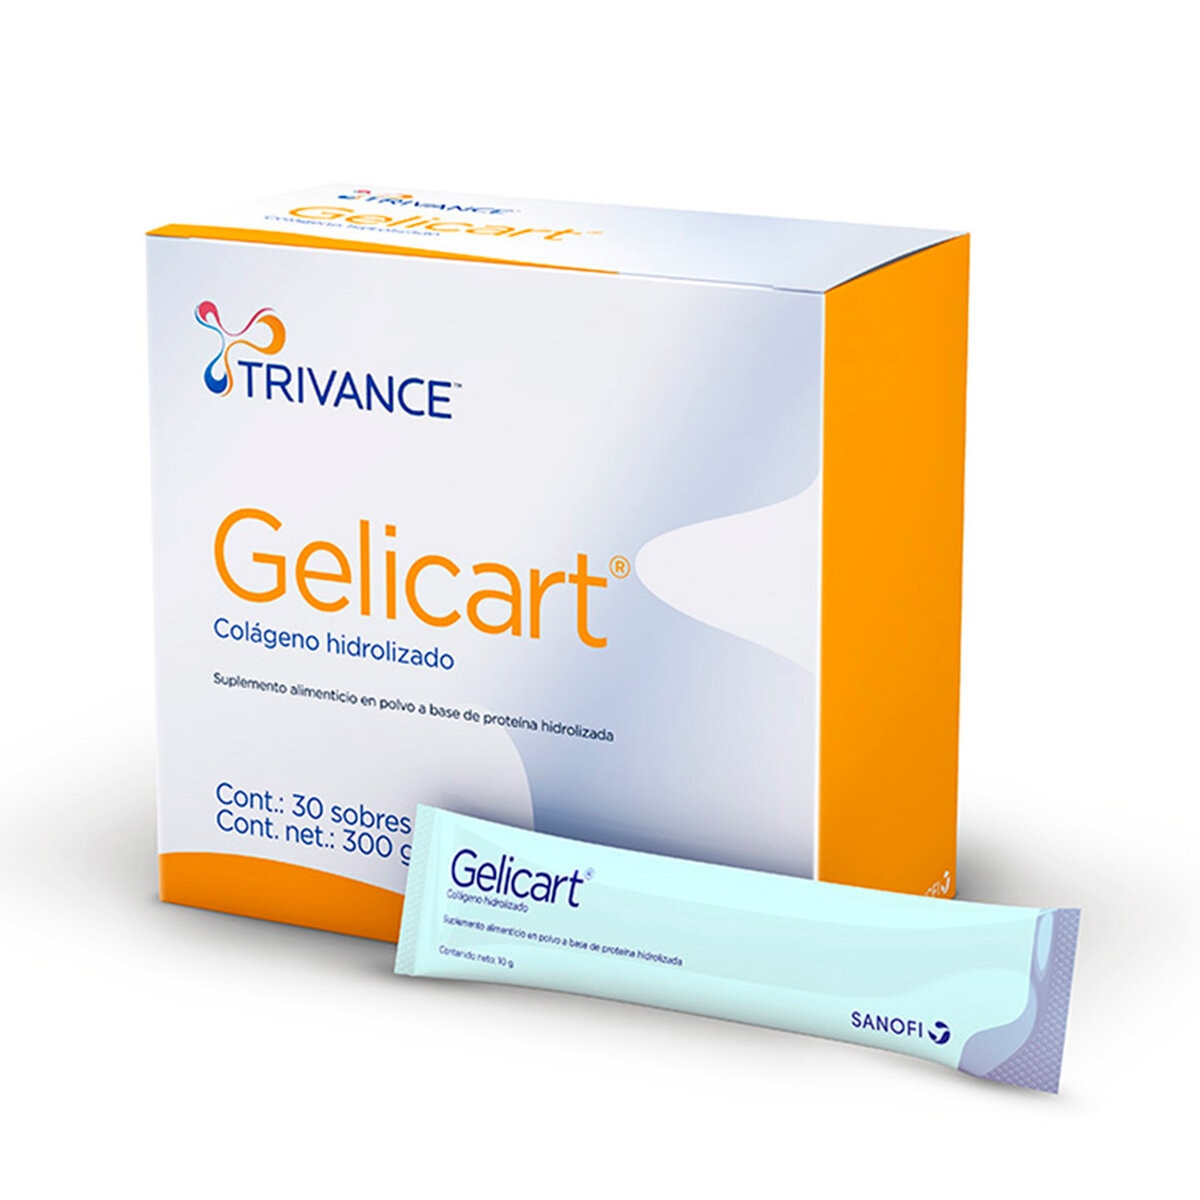 Gelicart colágeno hidrolizado 30 sobres con 10gr